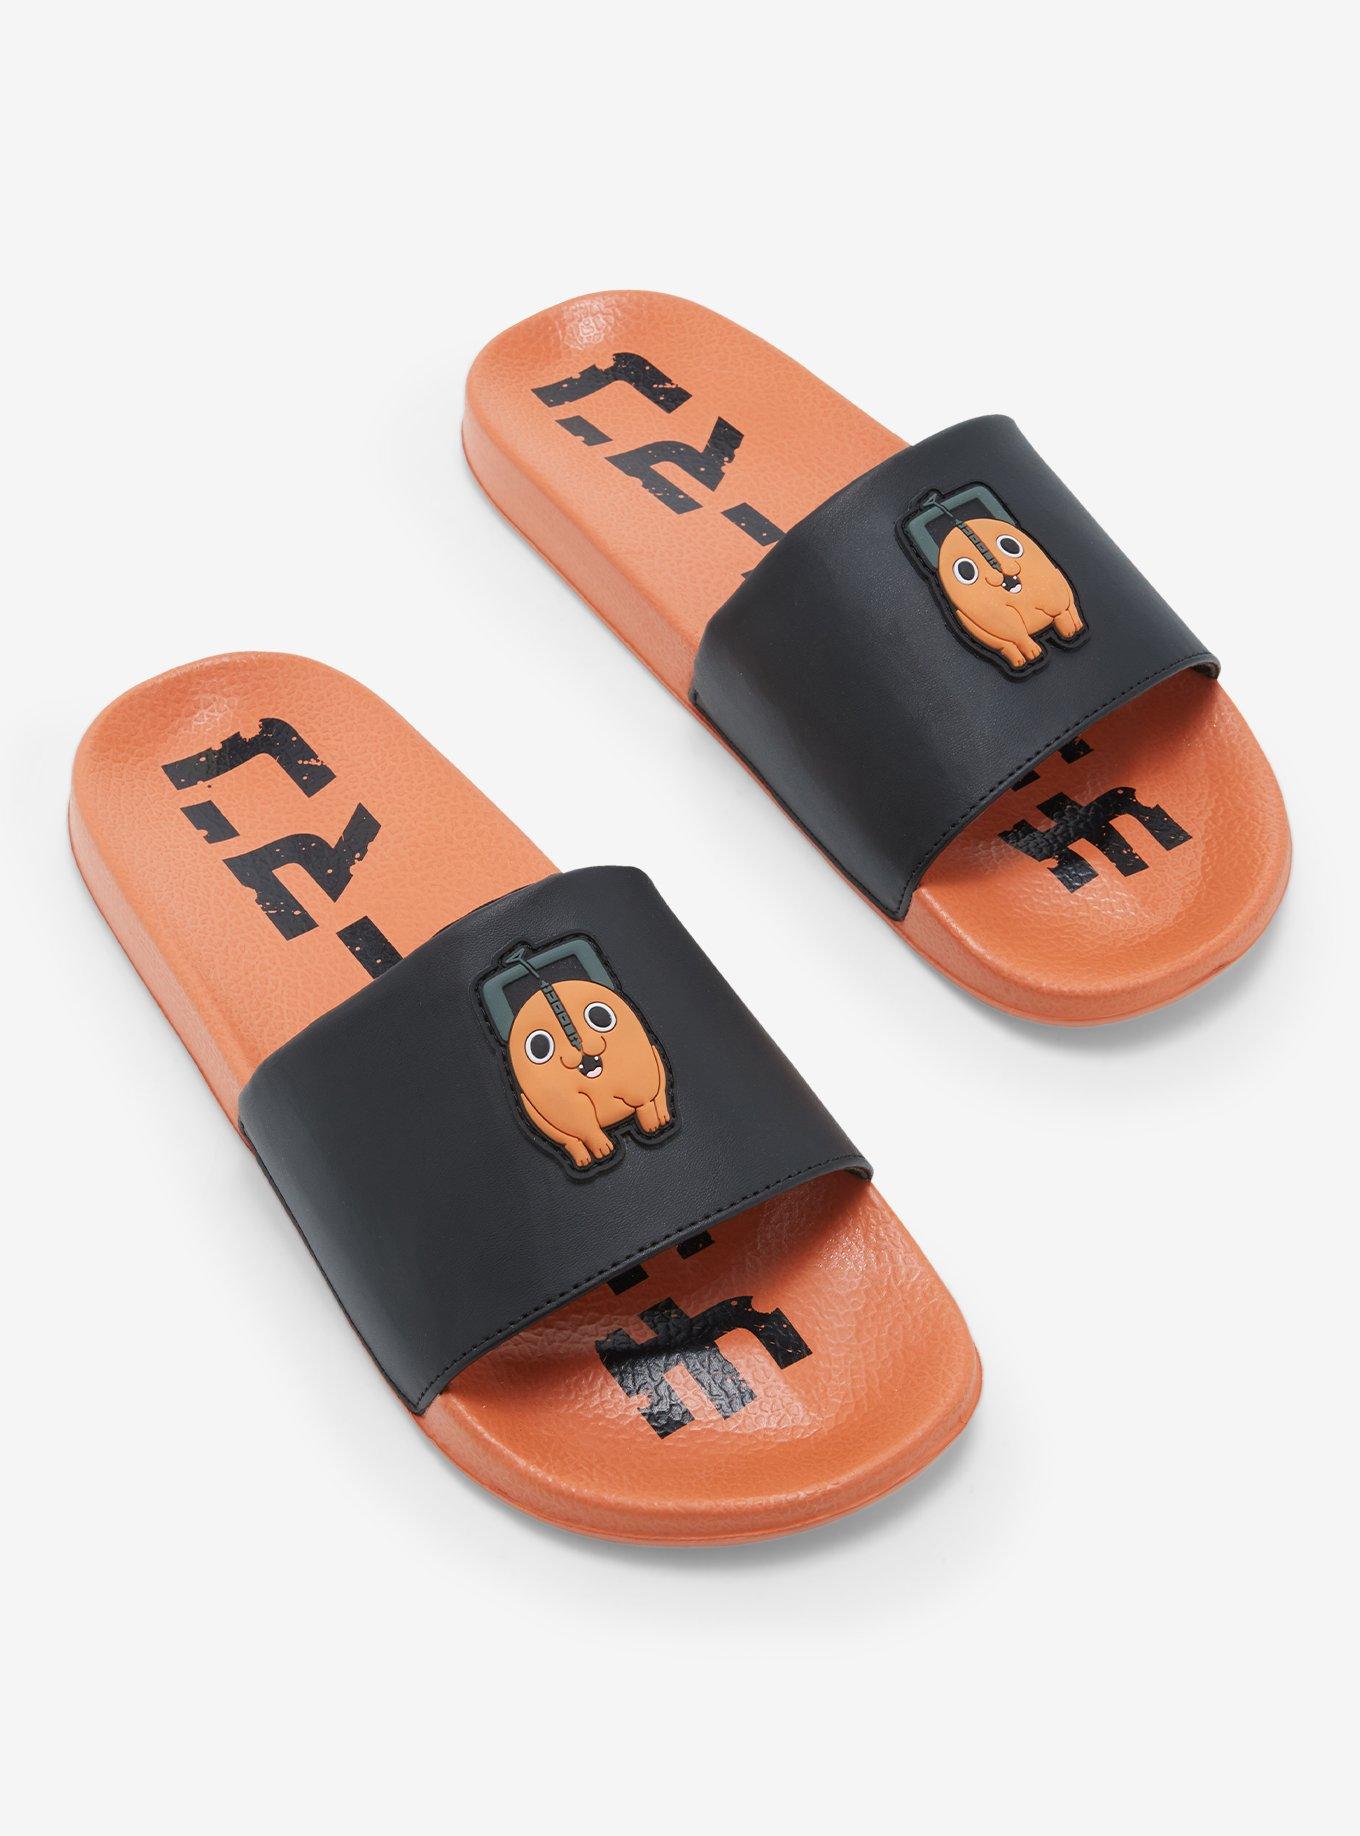 Deadpool Slide Sandals Custom Made Flip Flop Personalize for 